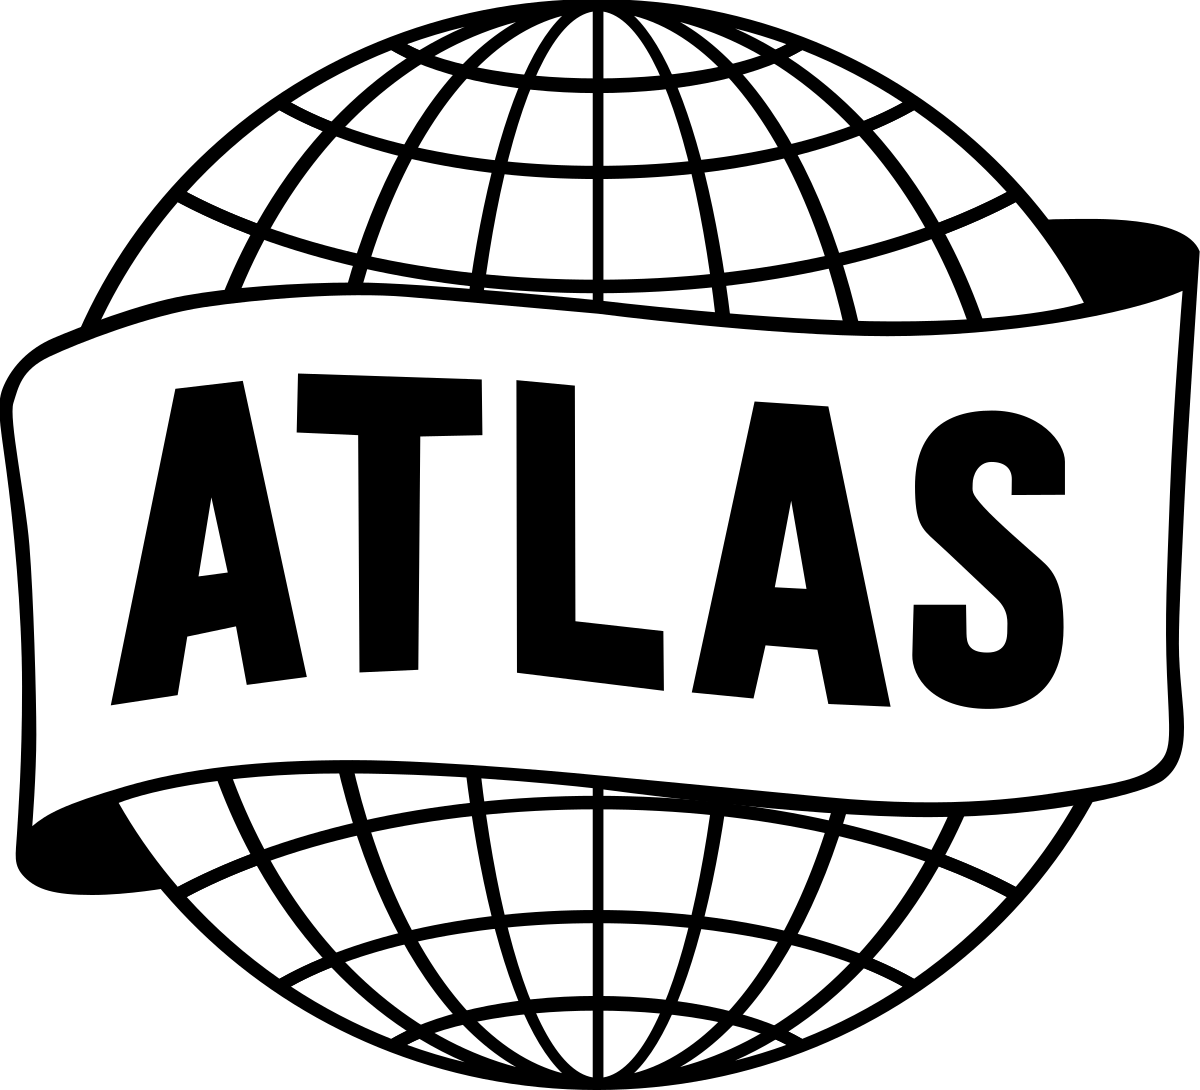 Atlas Logo - Atlas Comics (1950s)